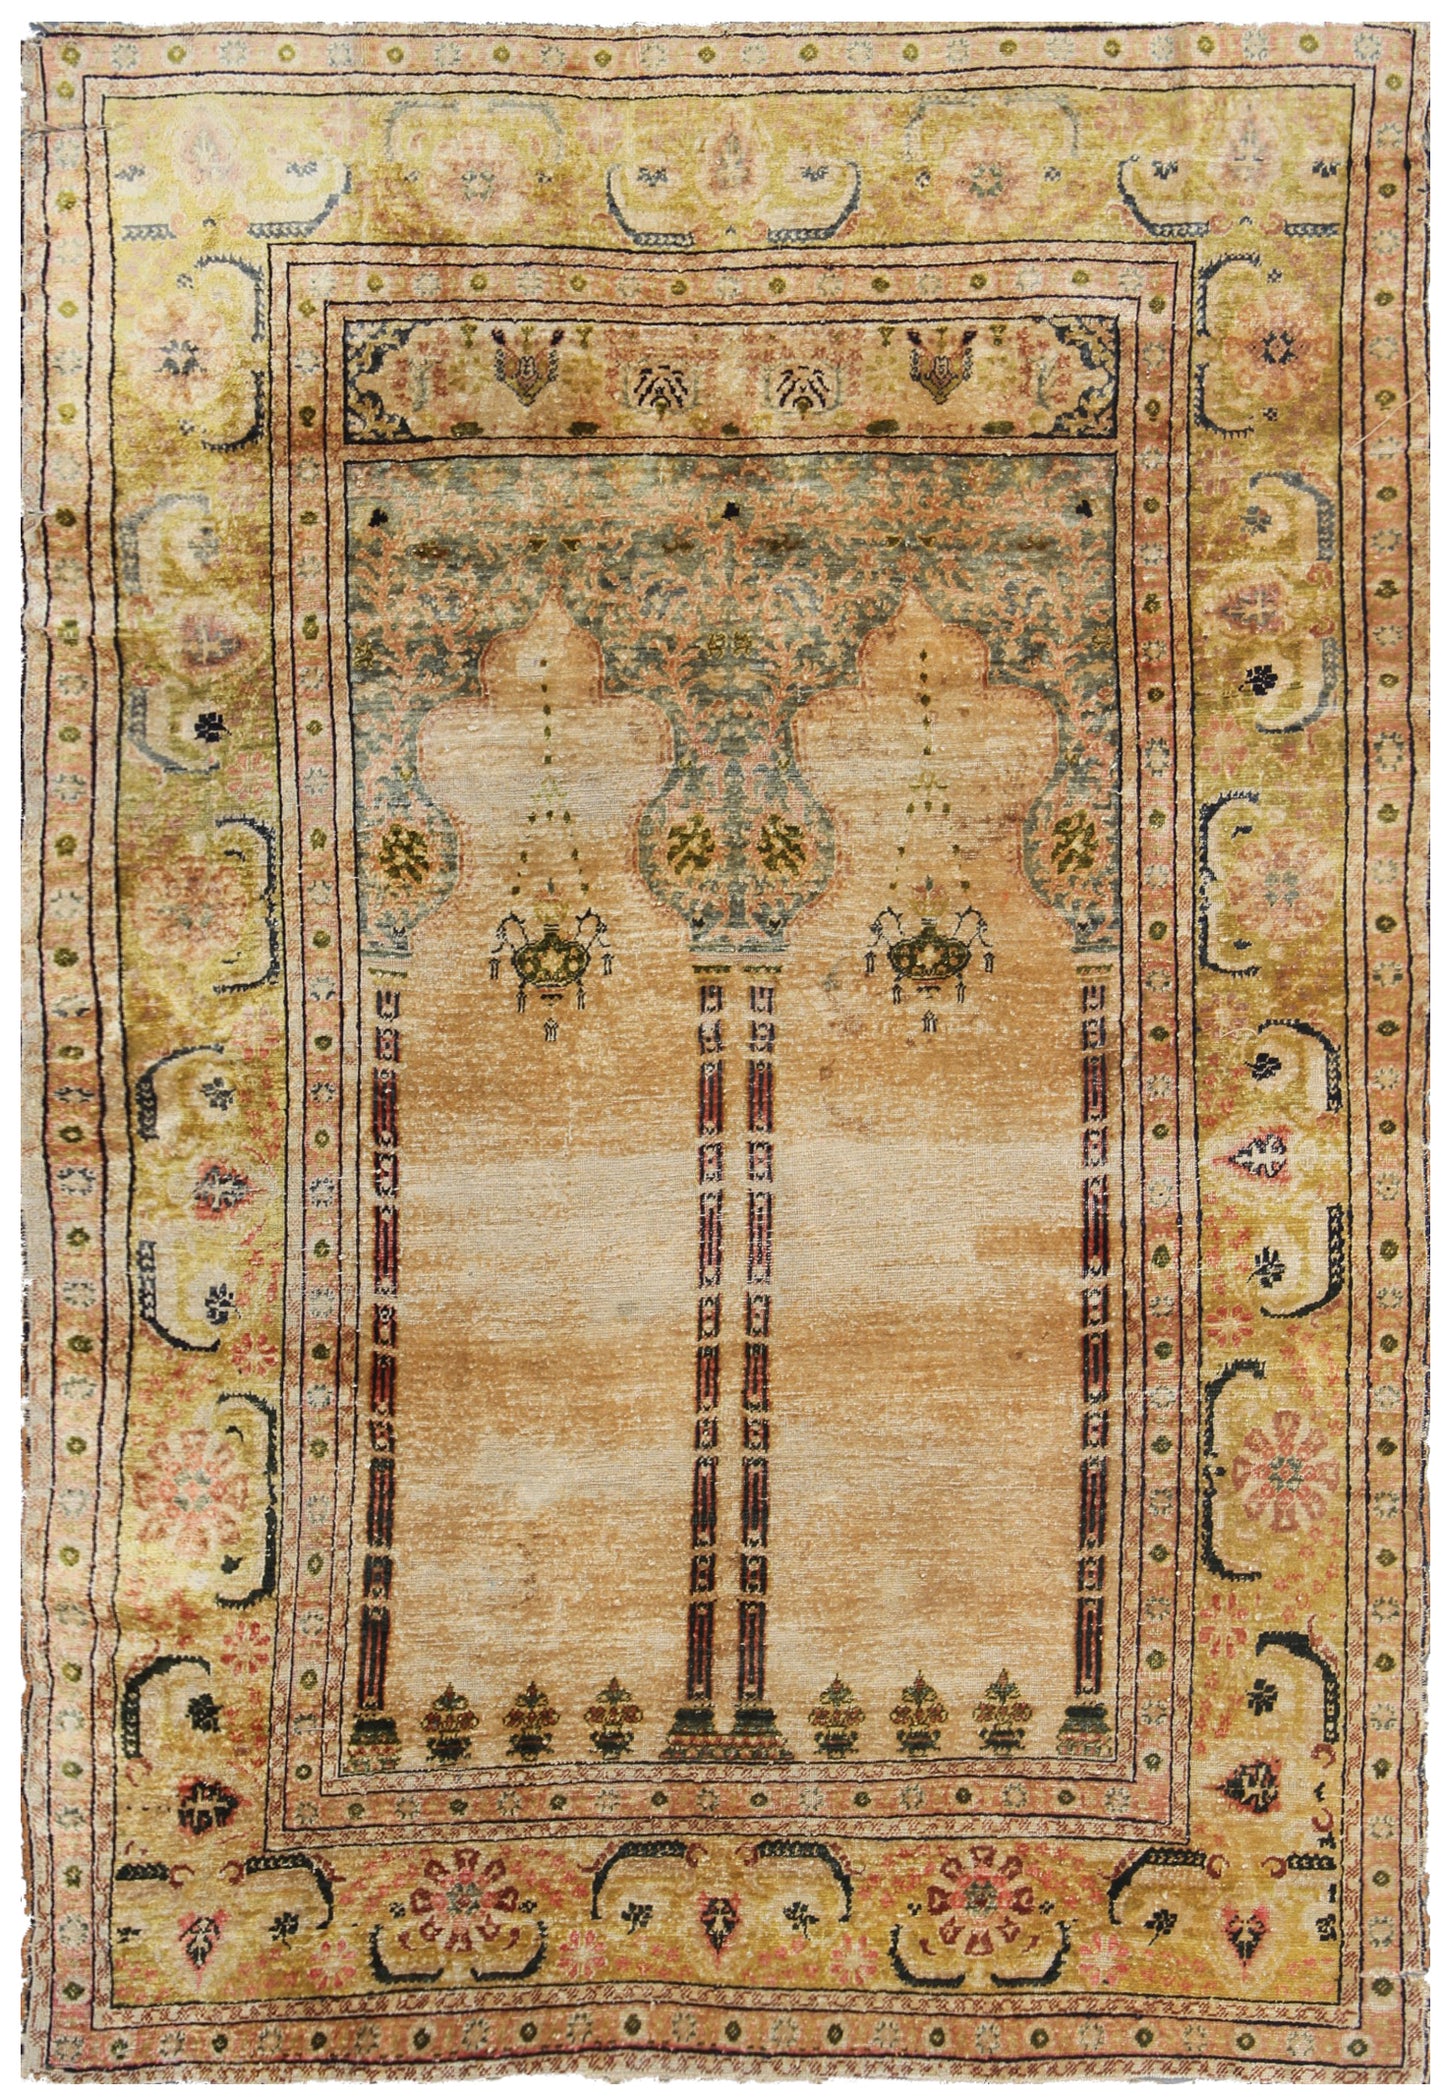 4'x6' Antique and Semi Antique Turkish Silk rug